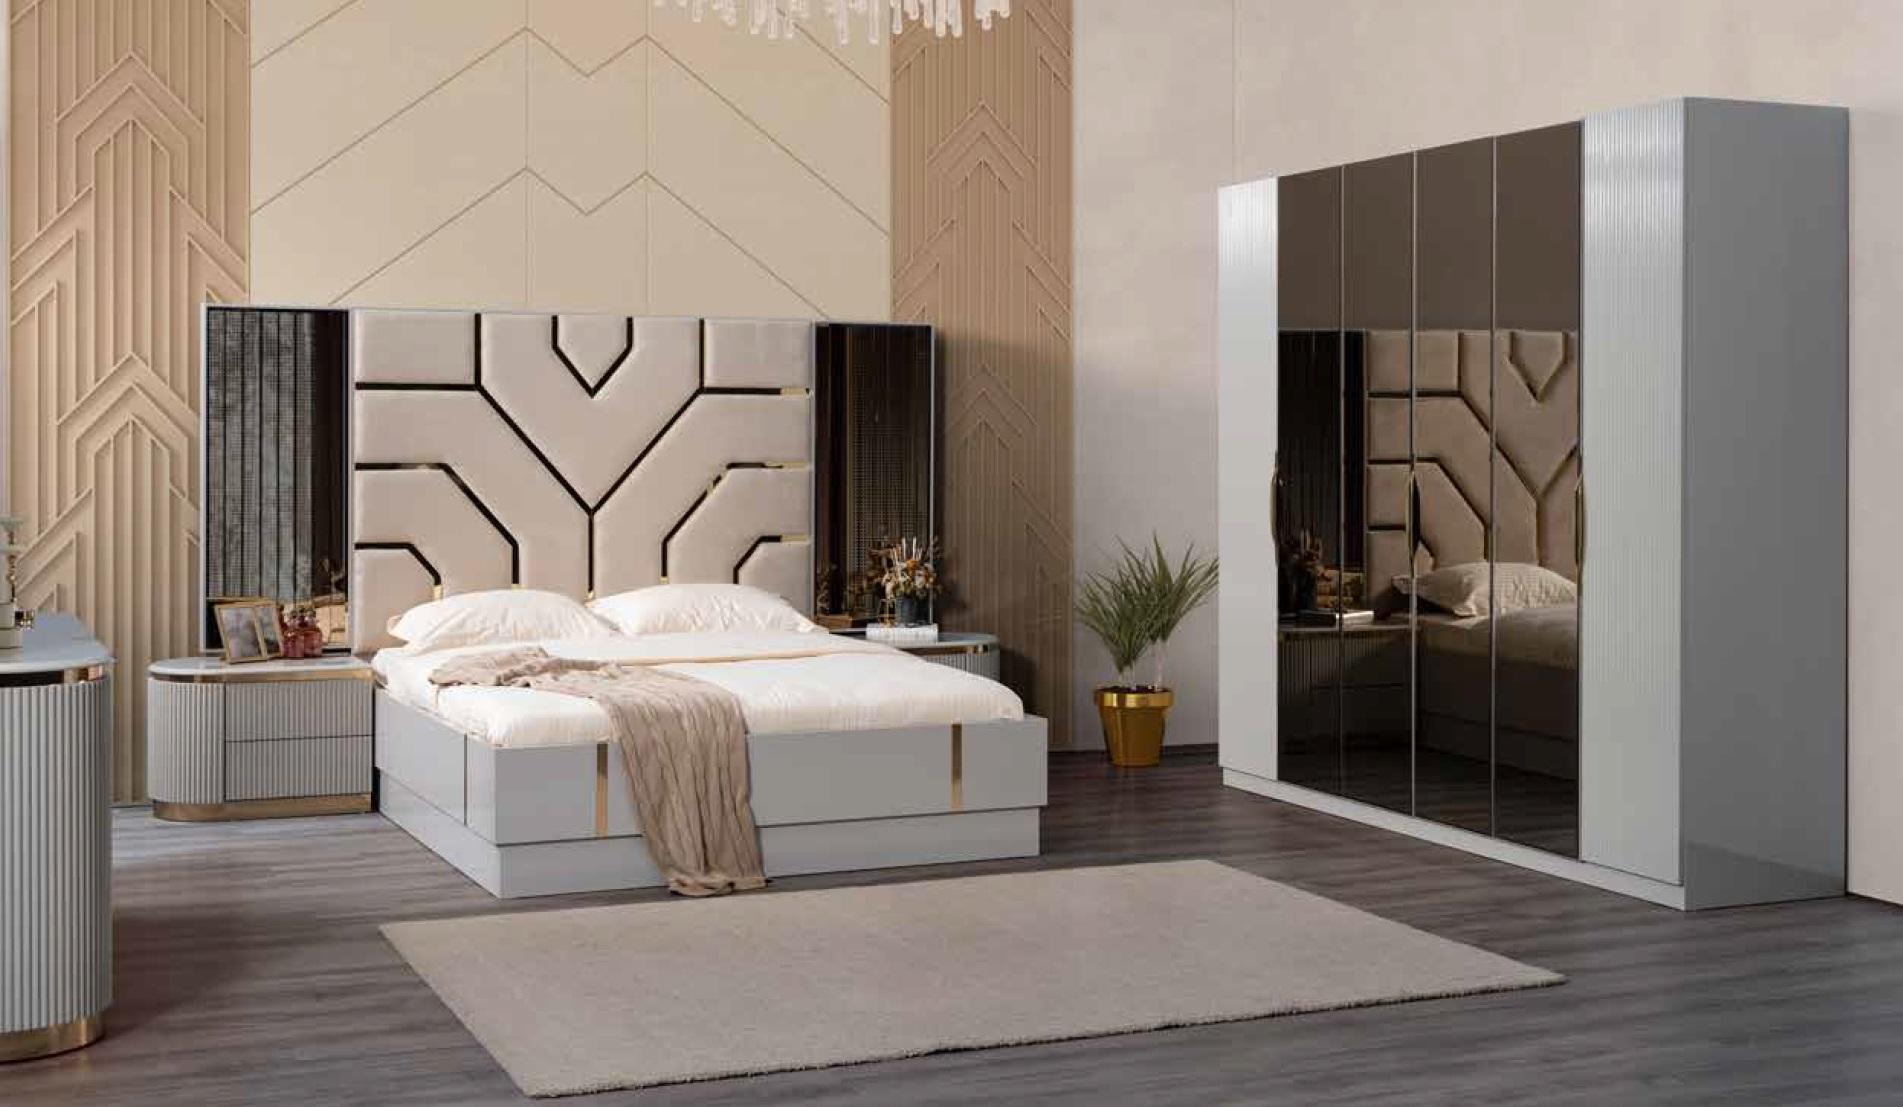 Luxus Bett Möbel 180x200cm Doppelbett Hotel Luxus Einrichtung Betten